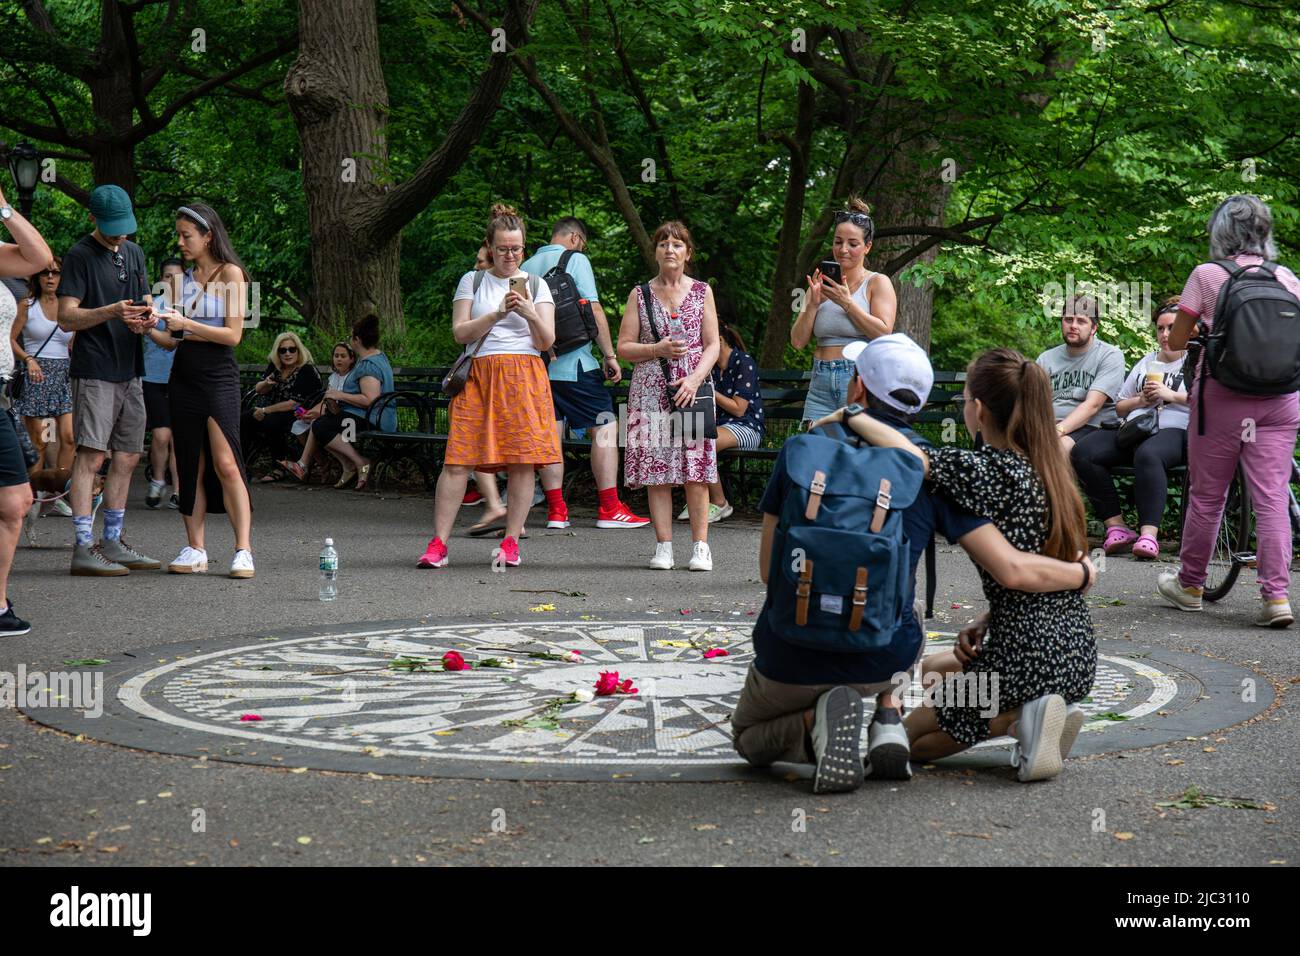 Touristen, die Fotos am John Lennon Memorial machen oder Imagine Mosaic im Central Park, New York City, Vereinigte Staaten von Amerika Stockfoto